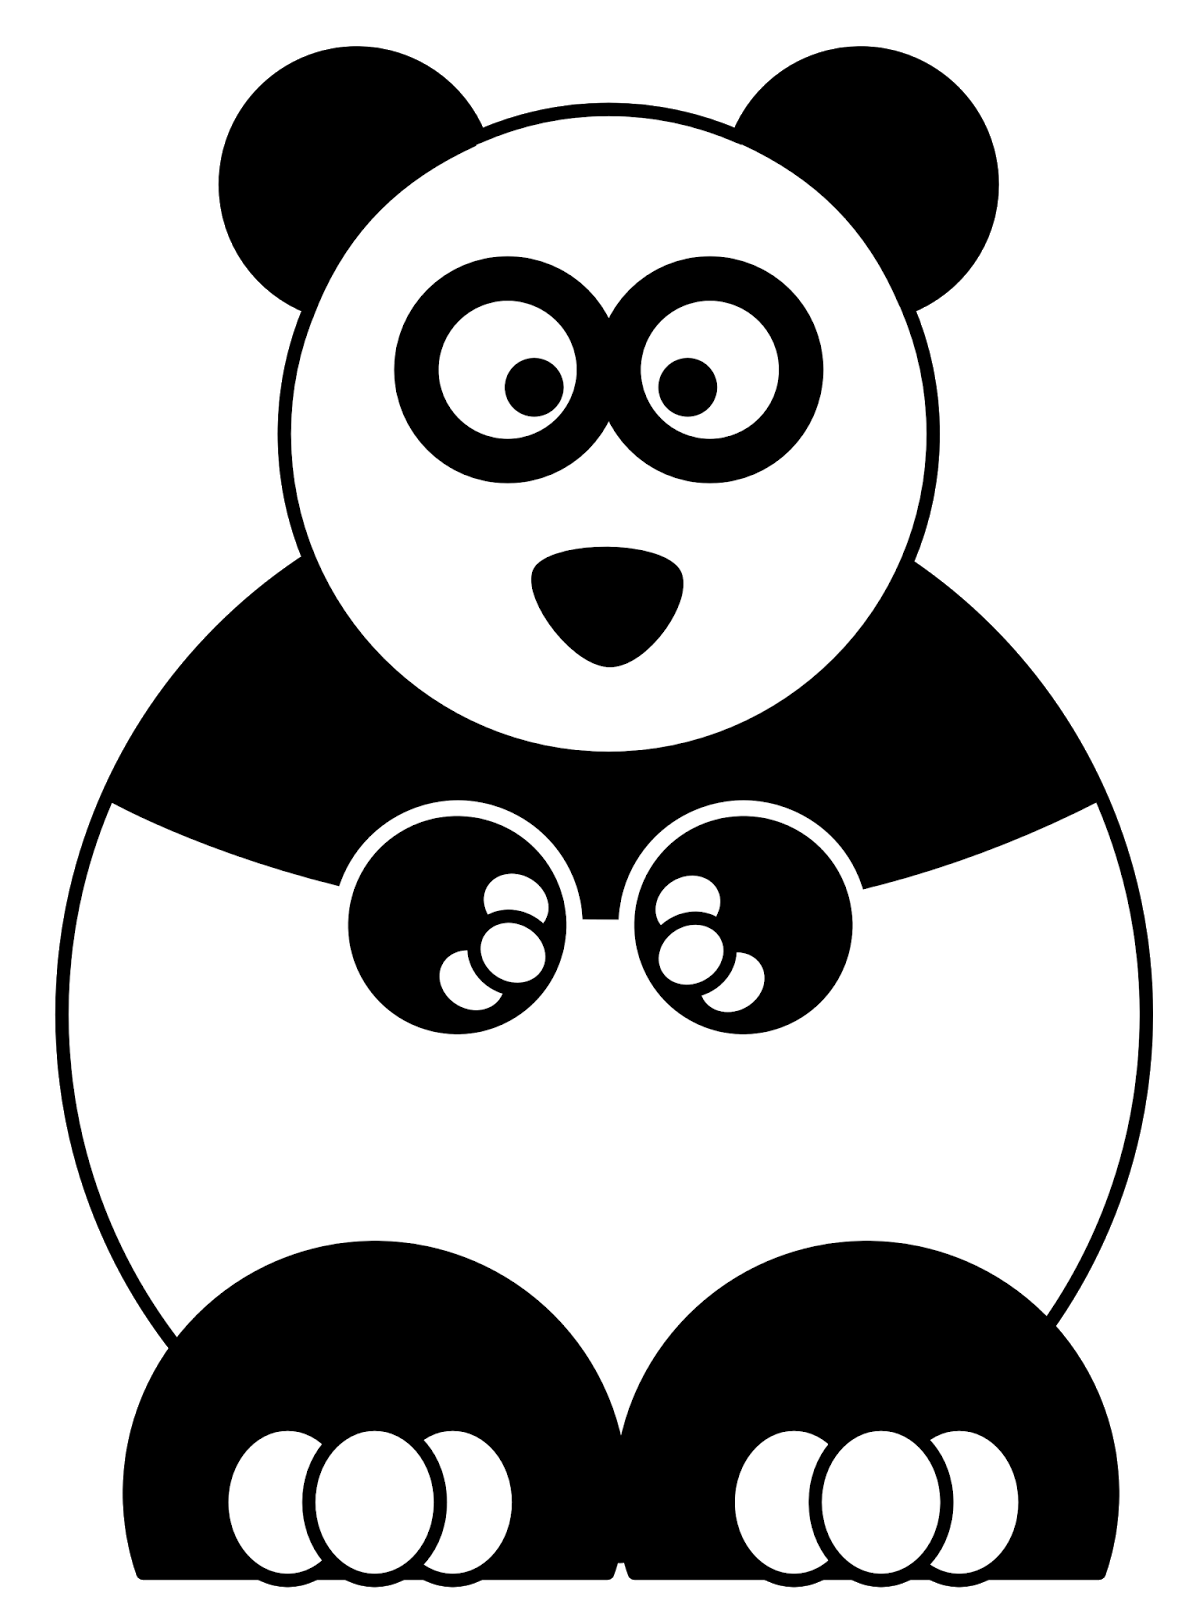 Online Buy Grosir Panda Kartun Gambar From China Panda Kartun